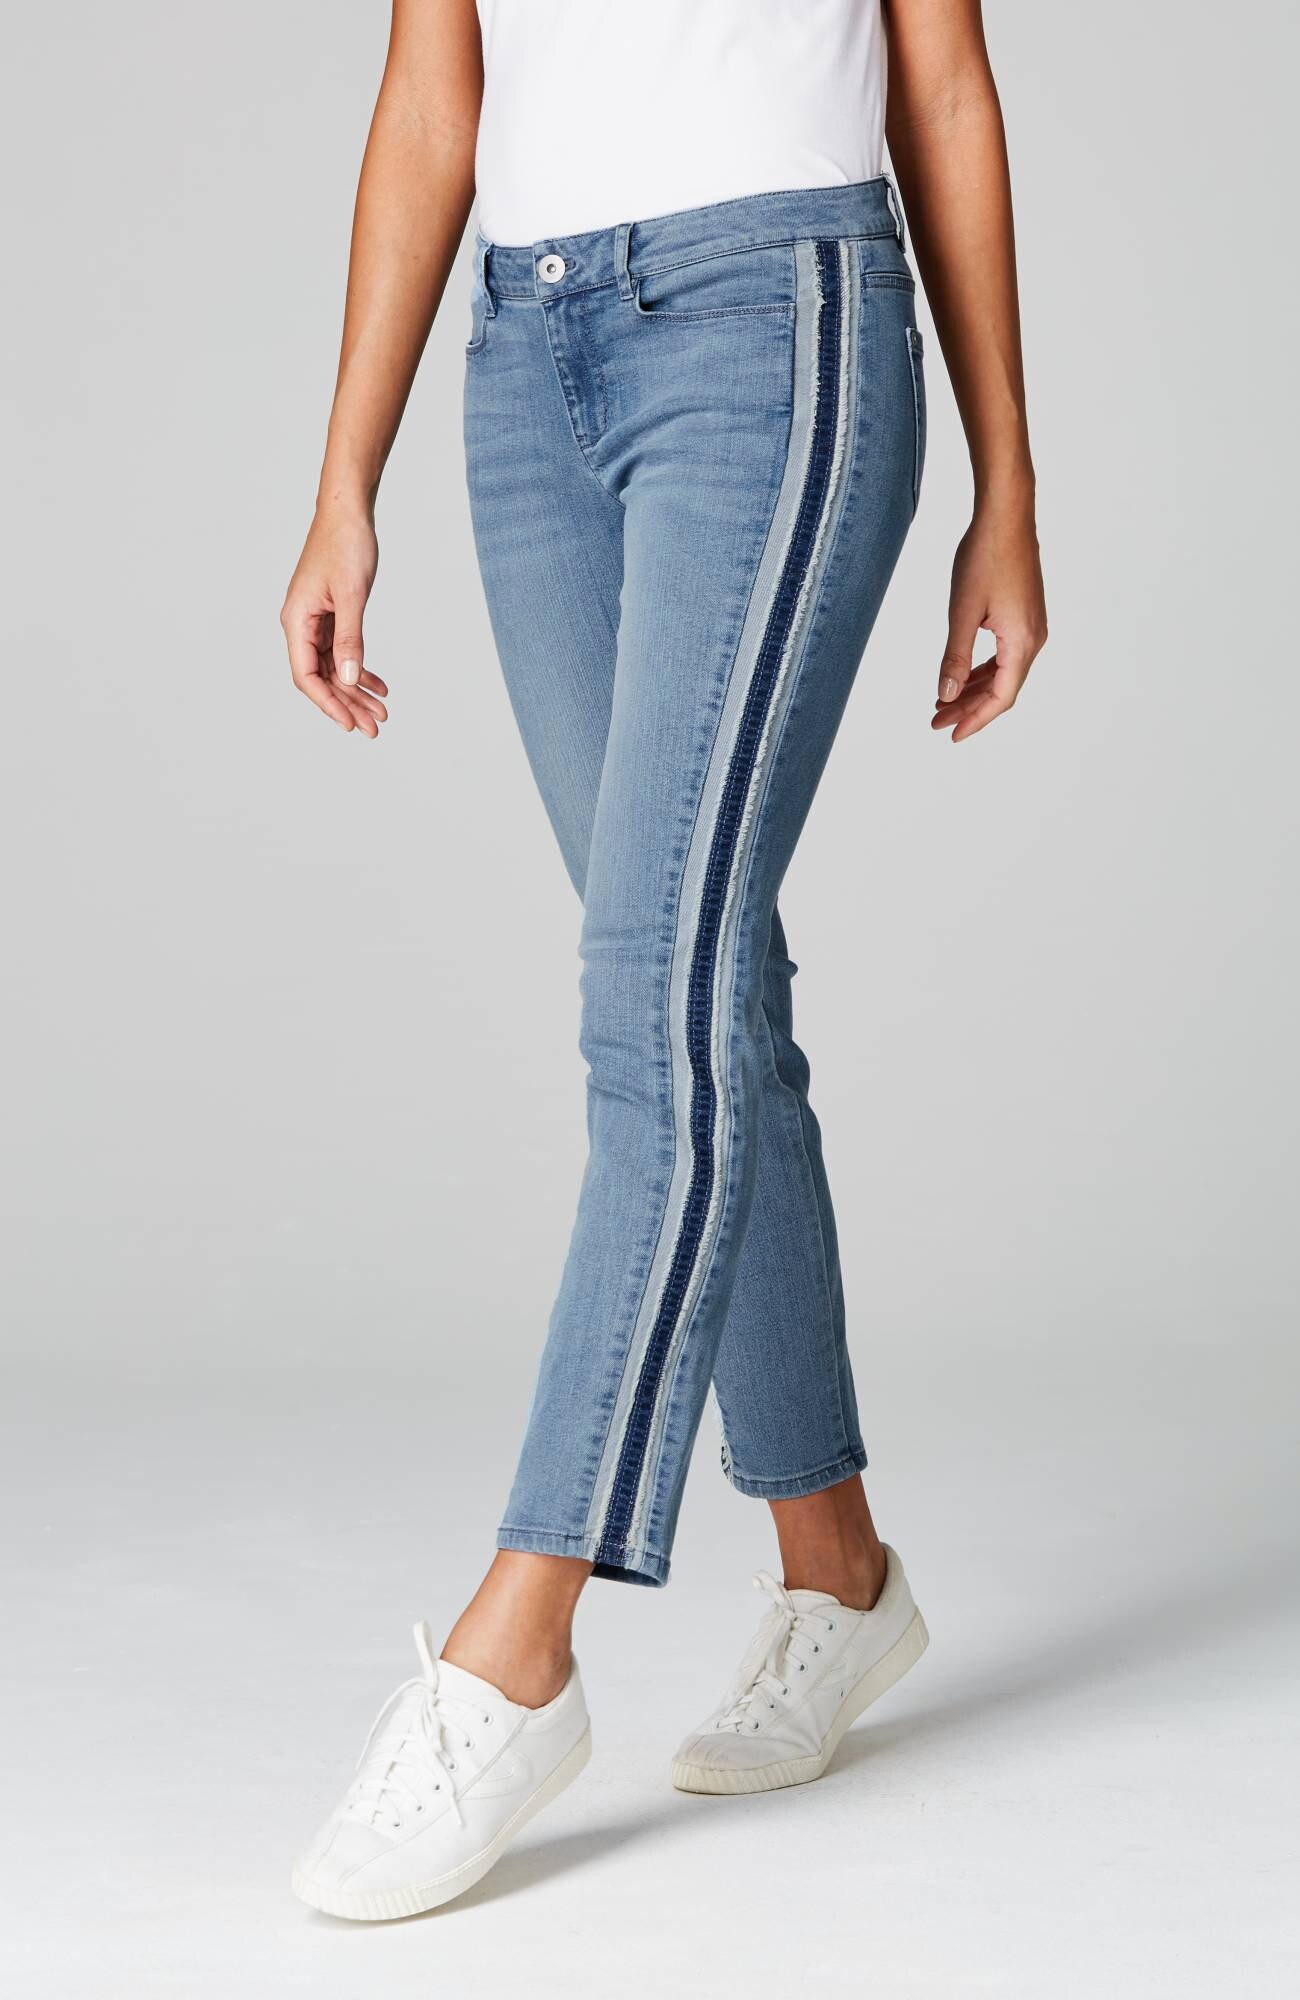 grey side stripe jeans